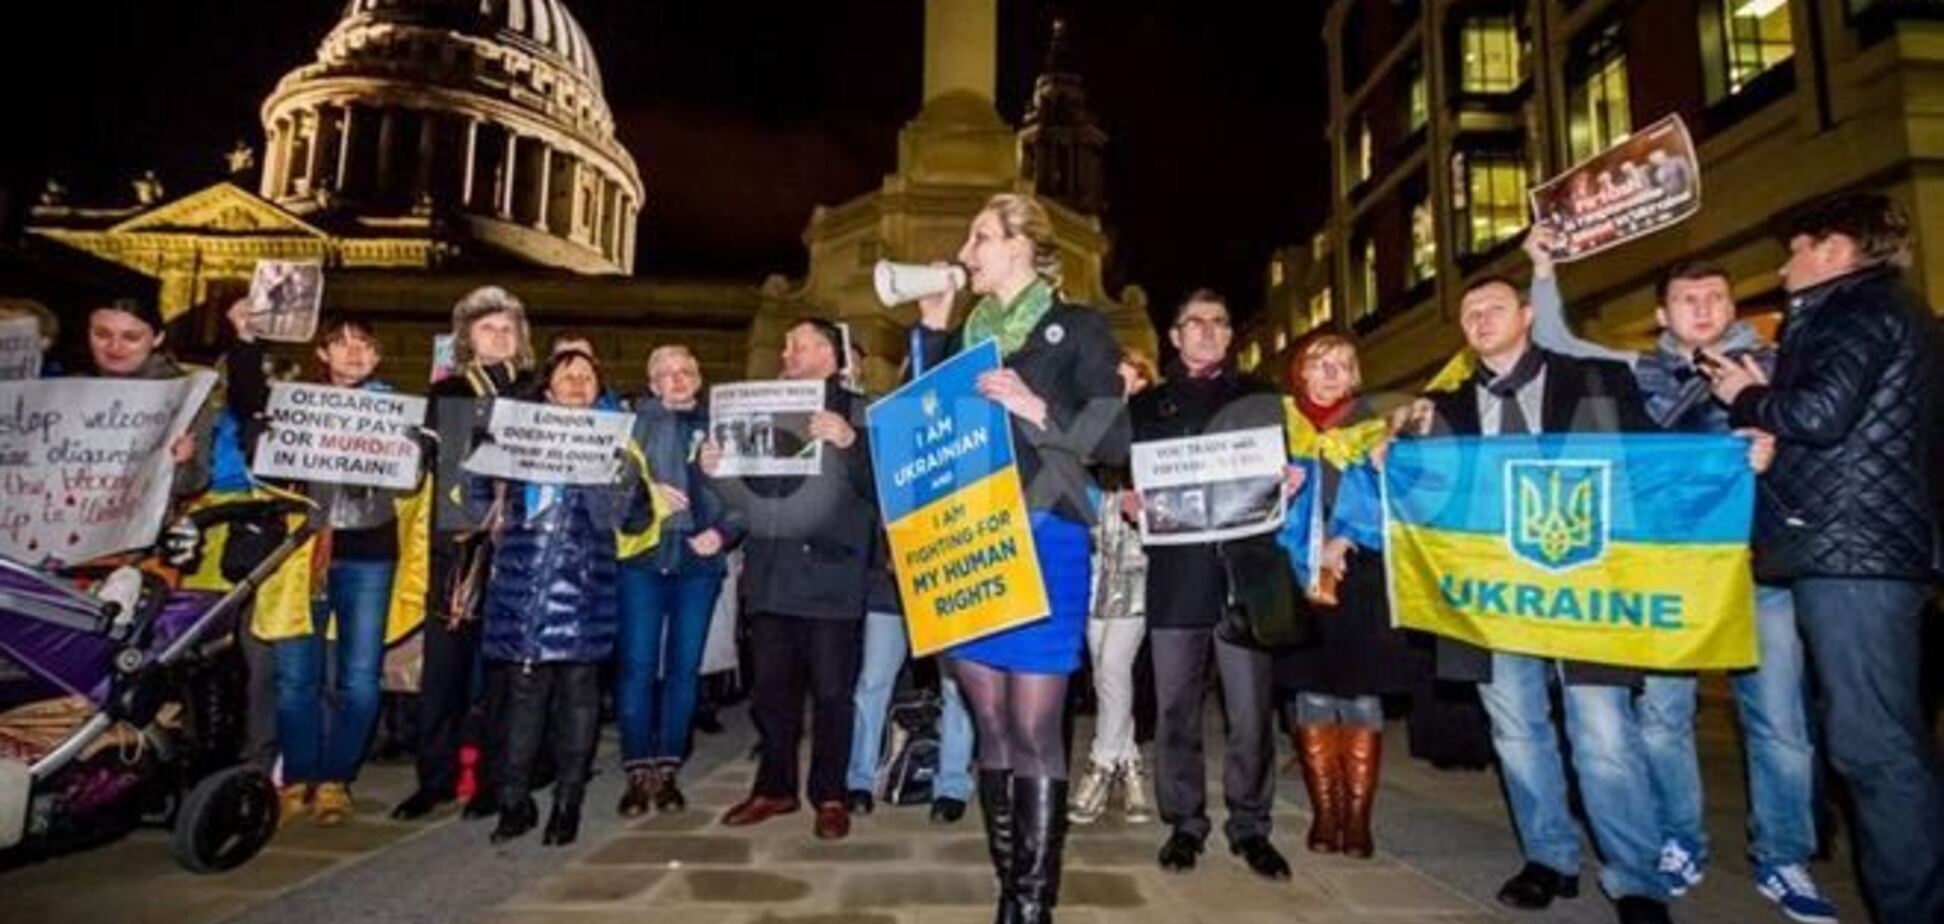 Посольство Украины в Лондоне окружено пикетчиками, которые кричат 'Позор!'